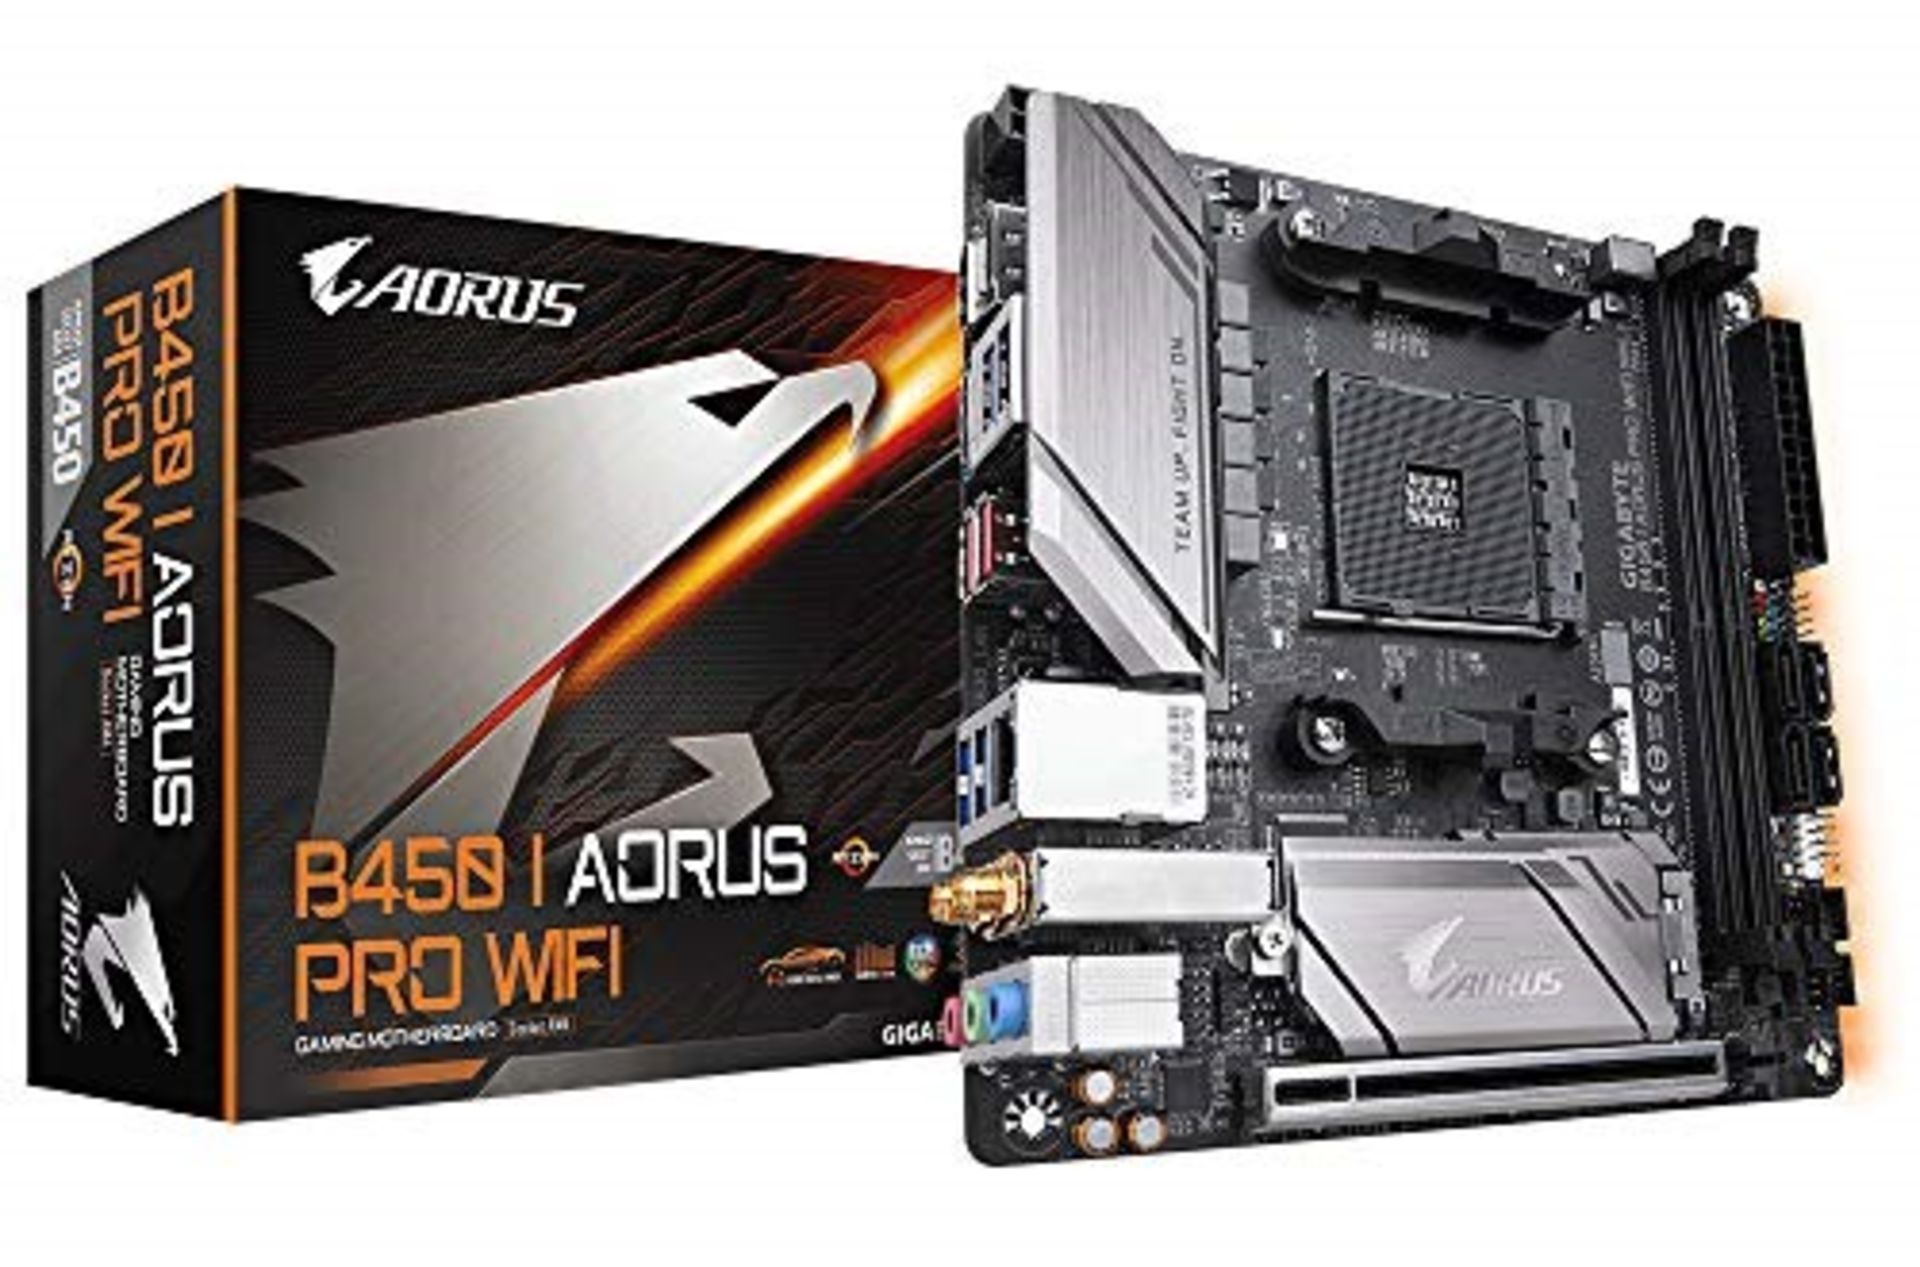 RRP £79.00 Aorus B450 I AORUS PRO WIFI (Socket AM4/B450/DDR4/S-ATA 600/Mini-ITX)